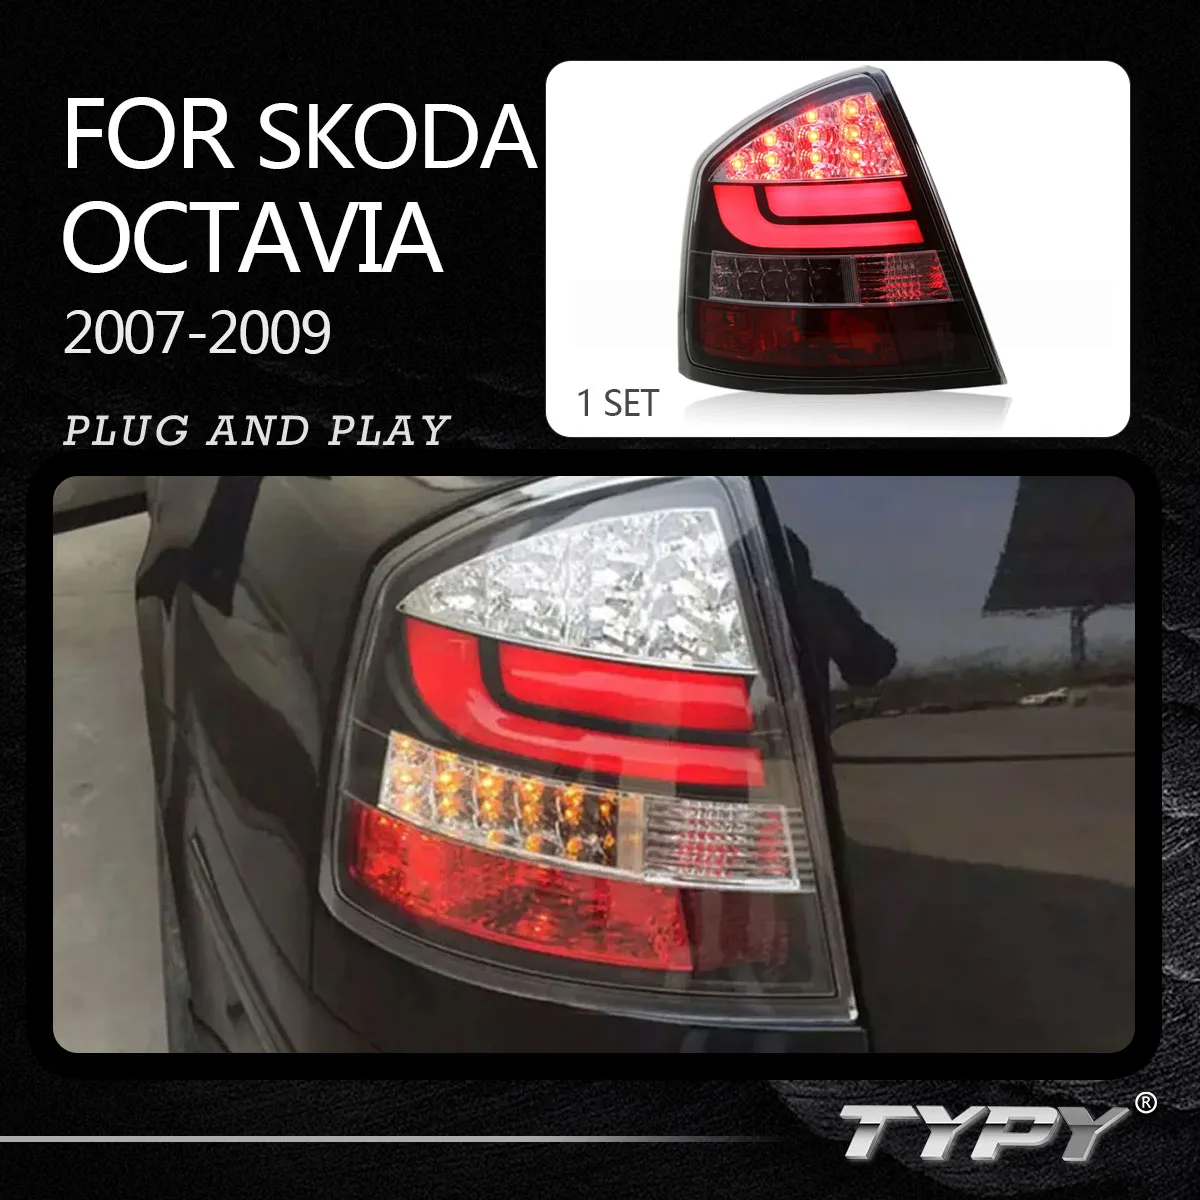 

Задняя фара автомобиля, аксессуары для задней фары, задняя фара для Skoda Octavia 2007-2009